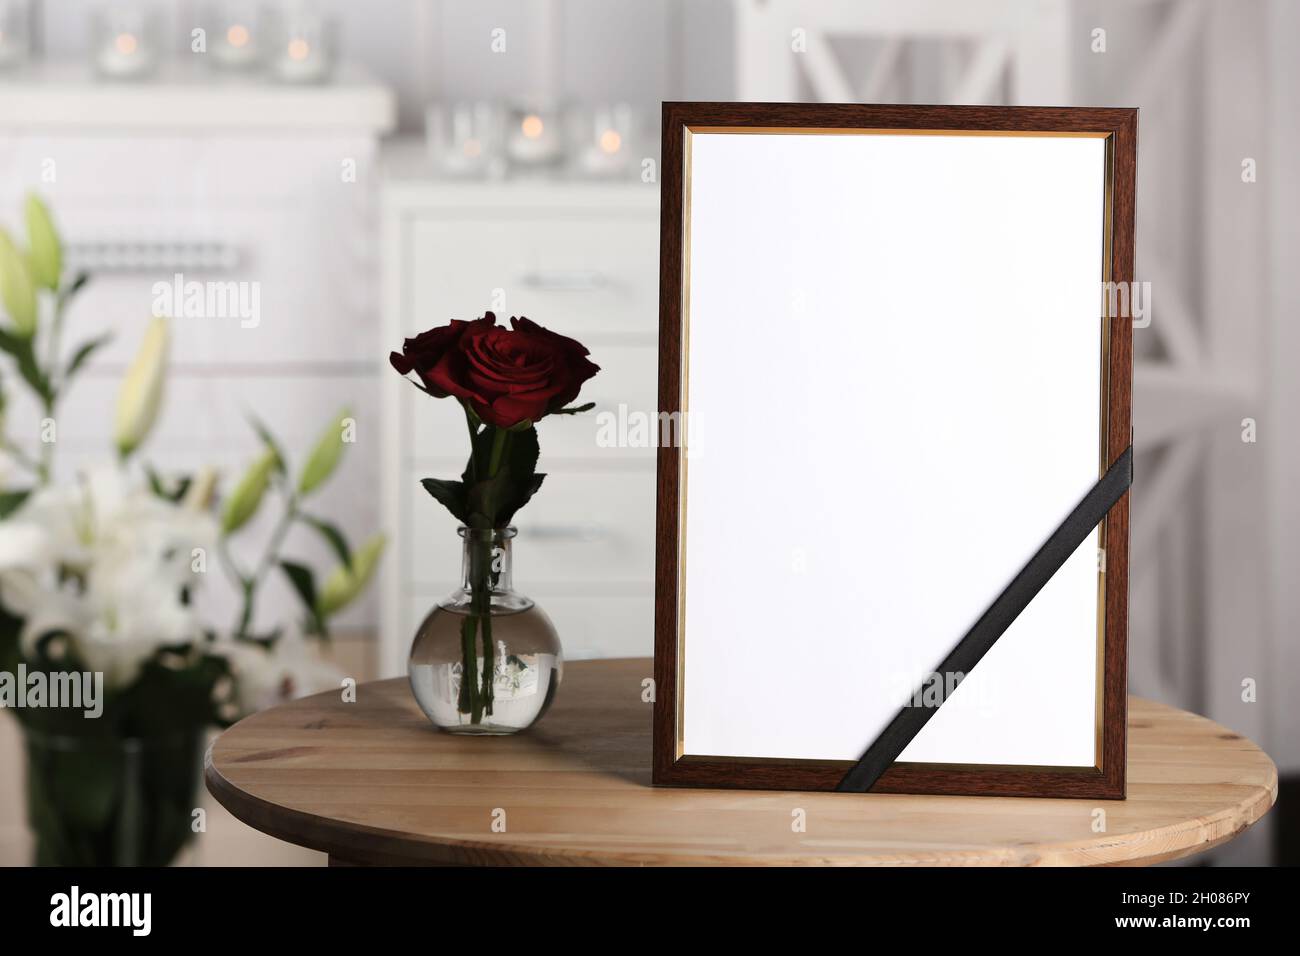 Beerdigung Bilderrahmen mit schwarzem Band und Rosen auf Tisch, drinnen  Stockfotografie - Alamy